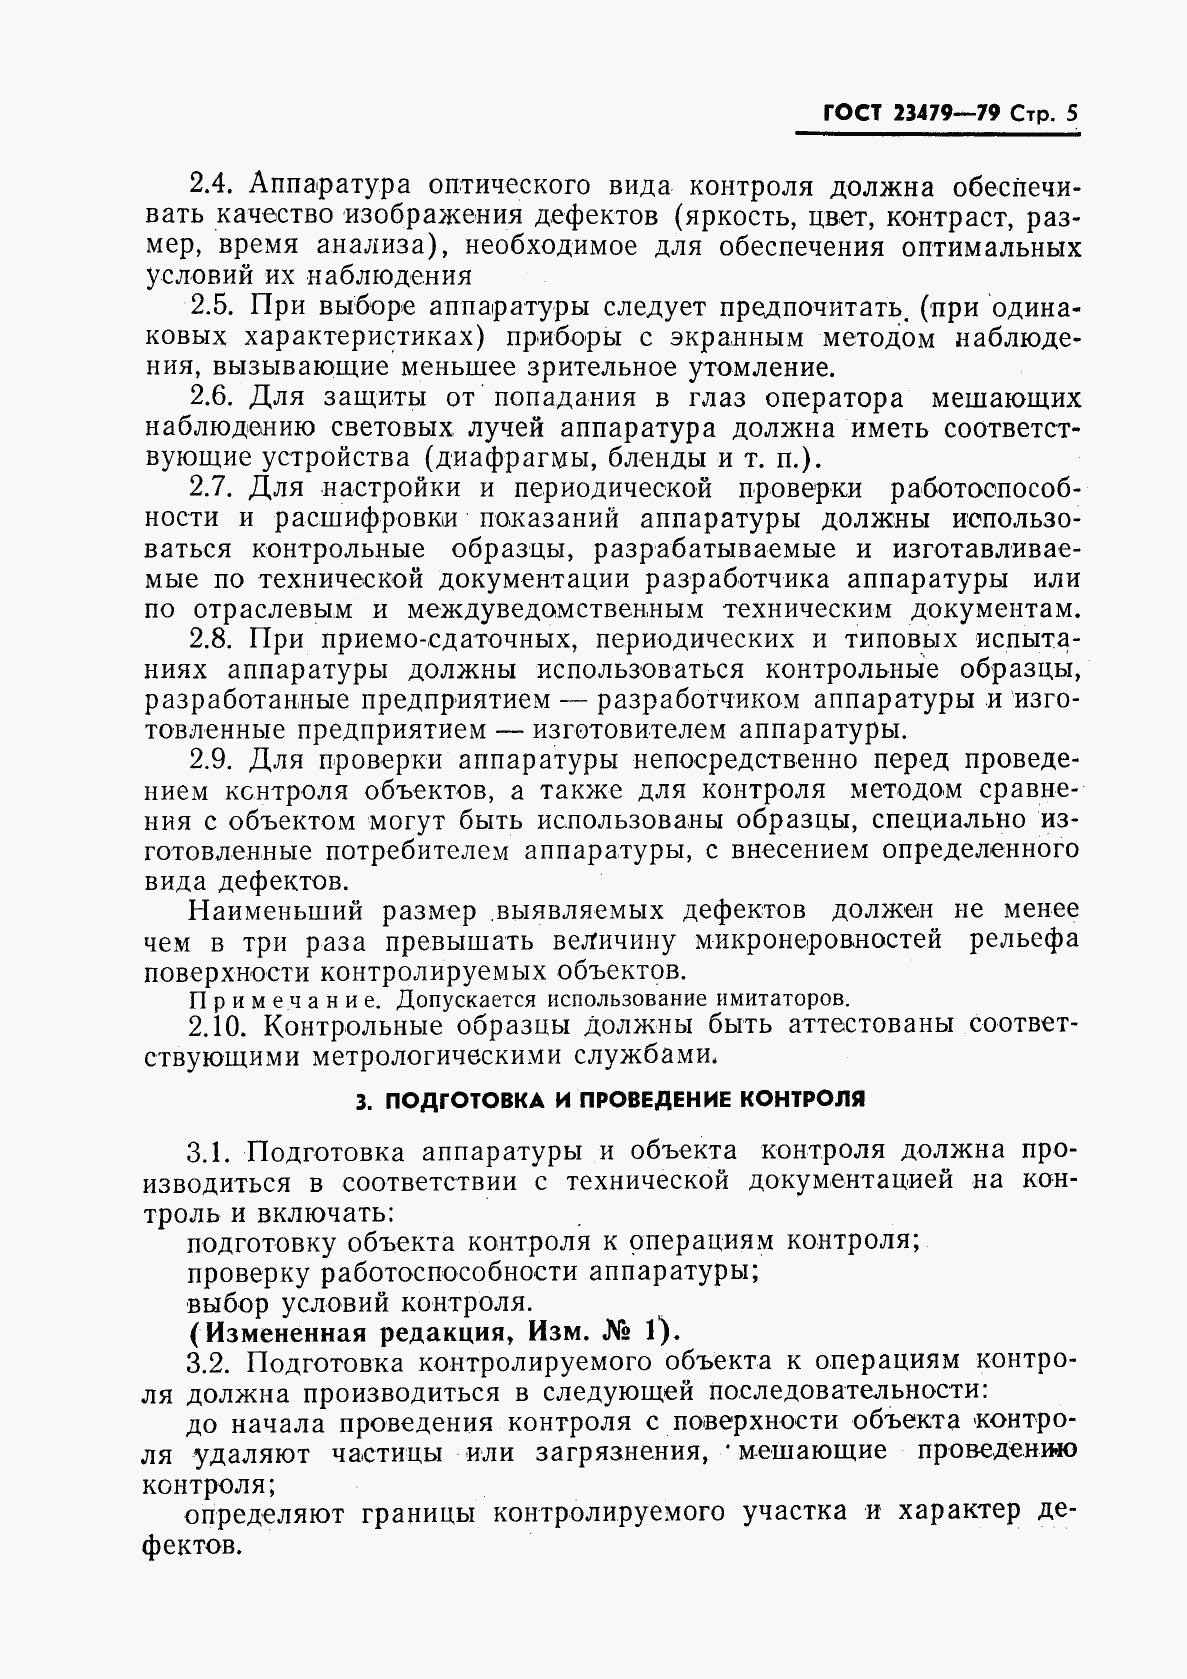 ГОСТ 23479-79, страница 6